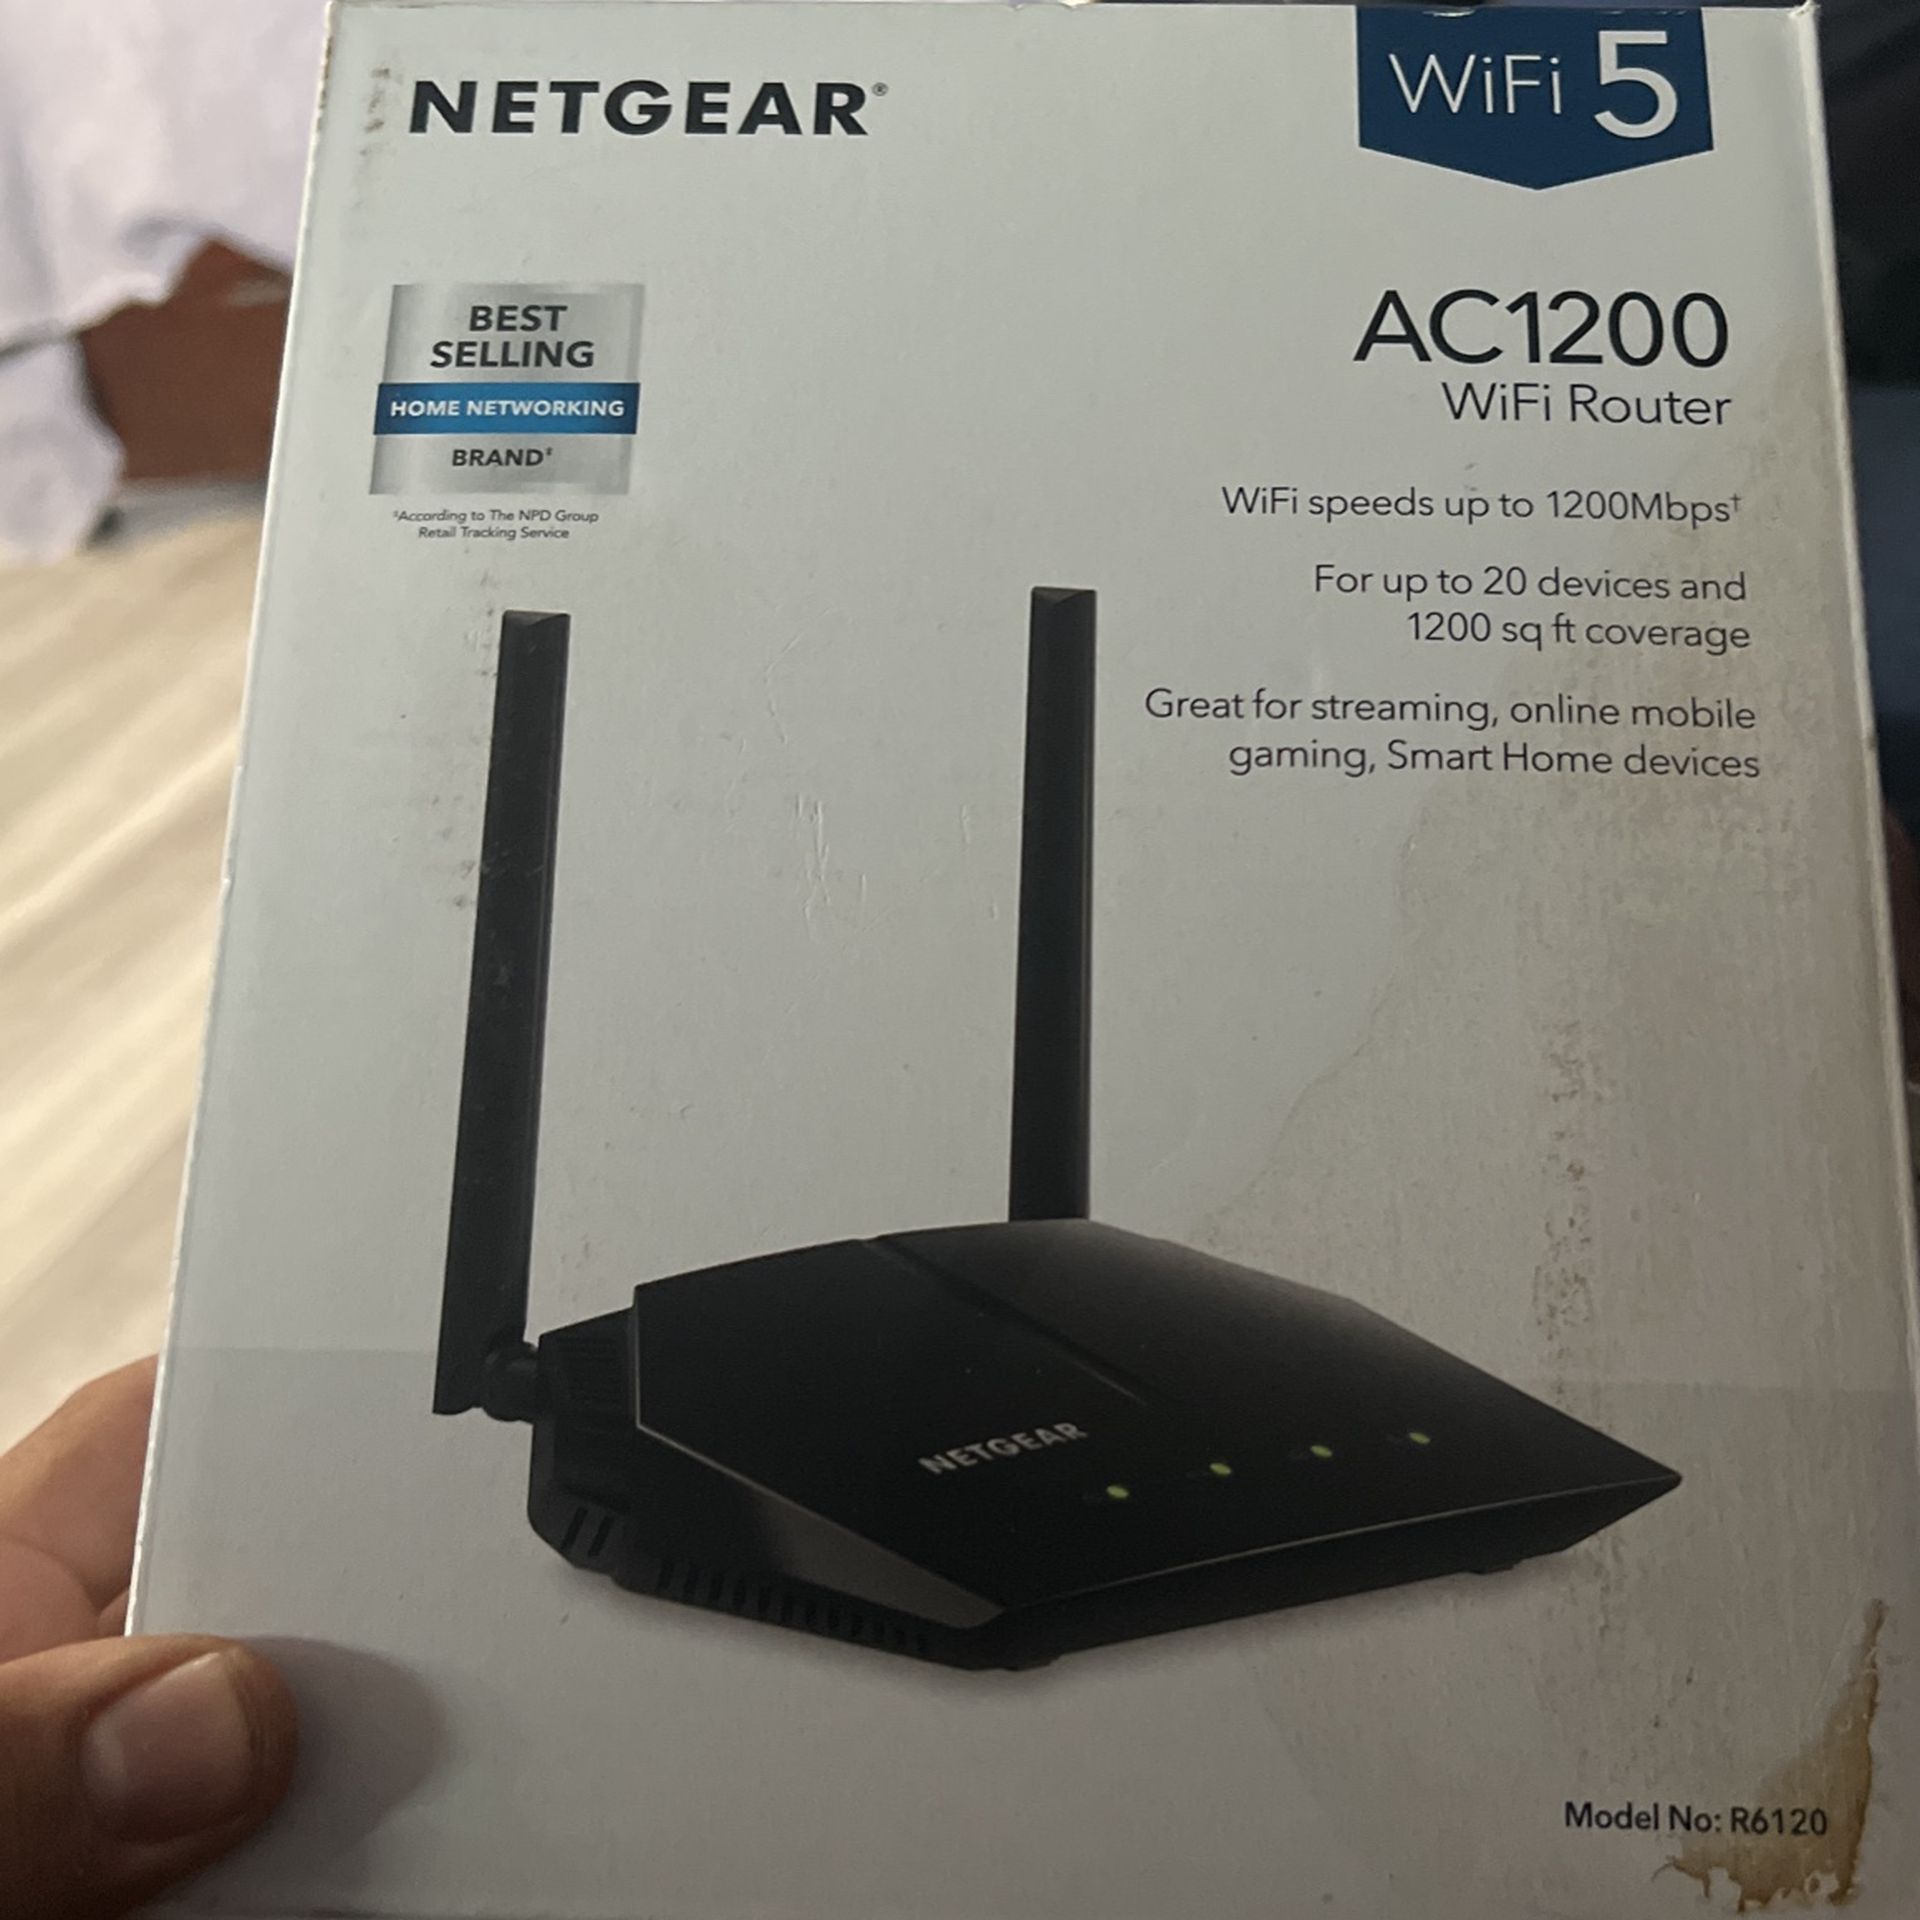 Net Gear Wifi Router 